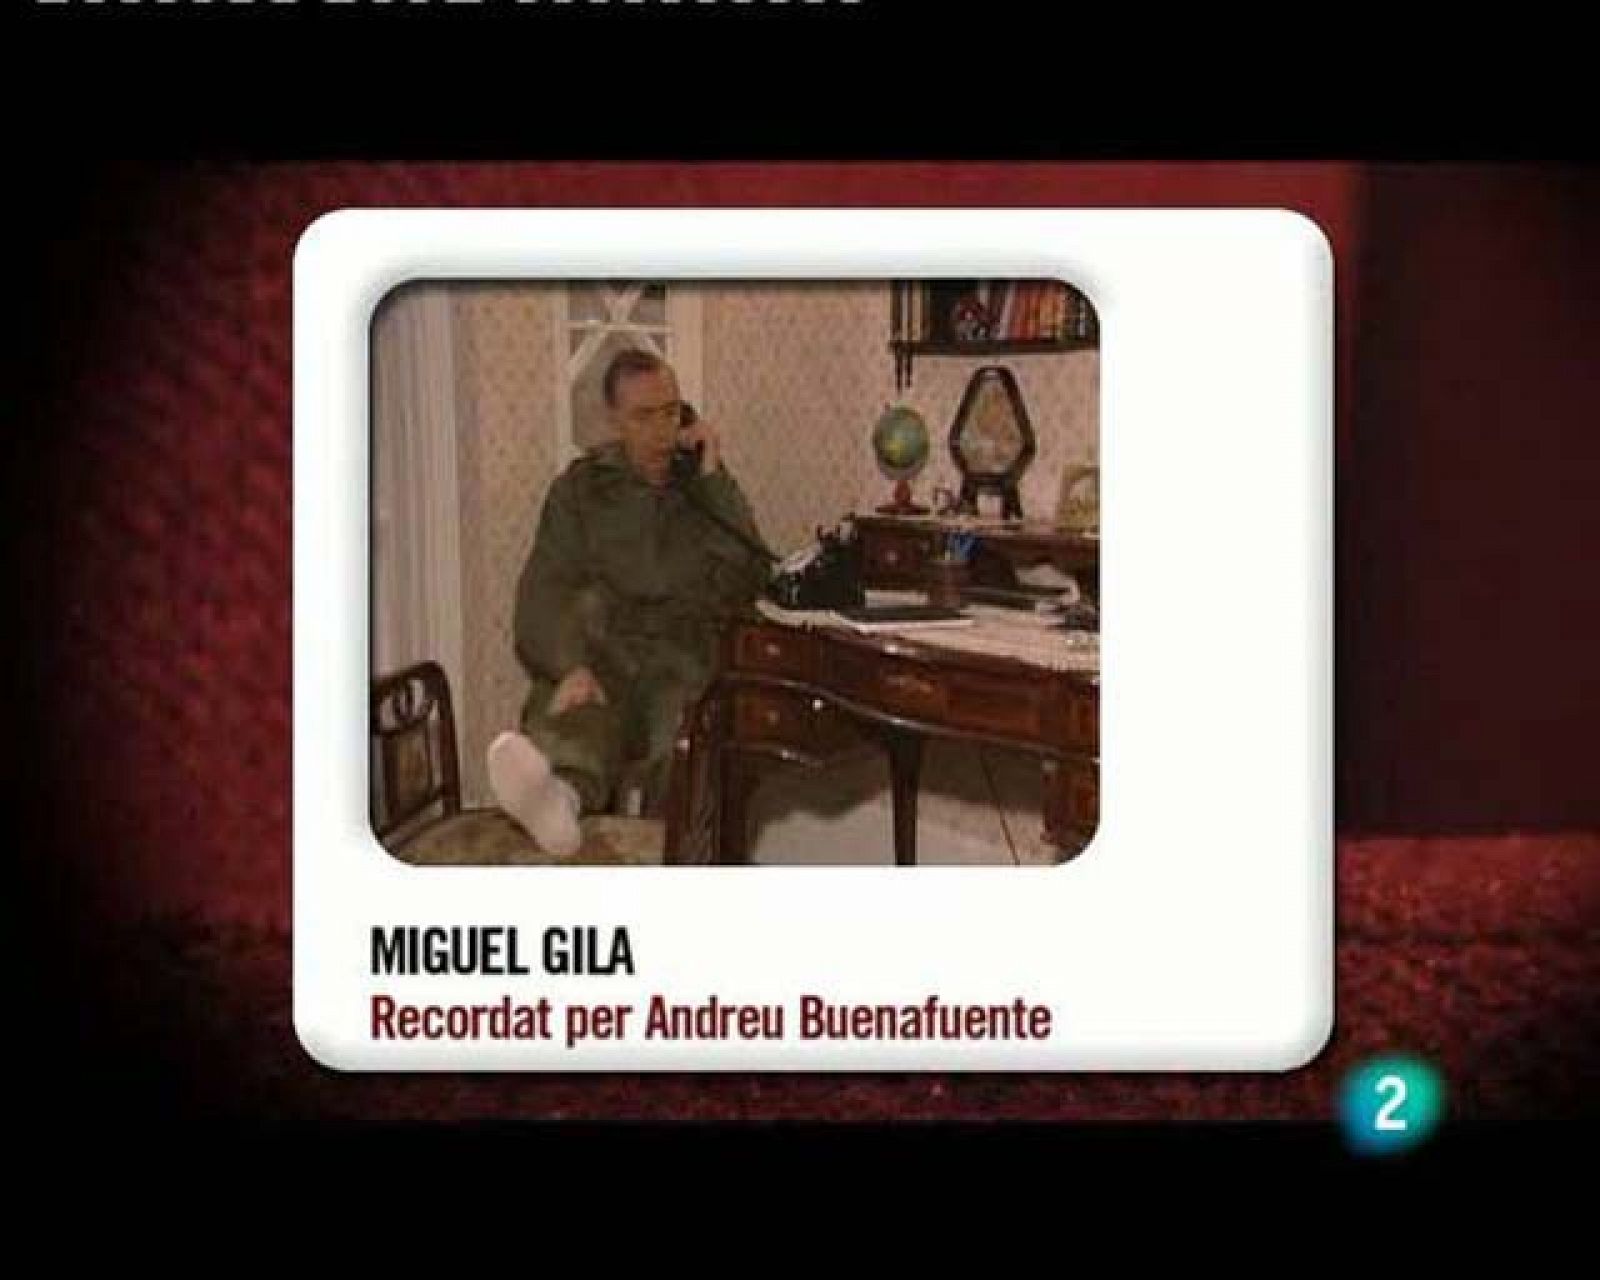 Memòries de la tele - Recorda a Miguel Gila